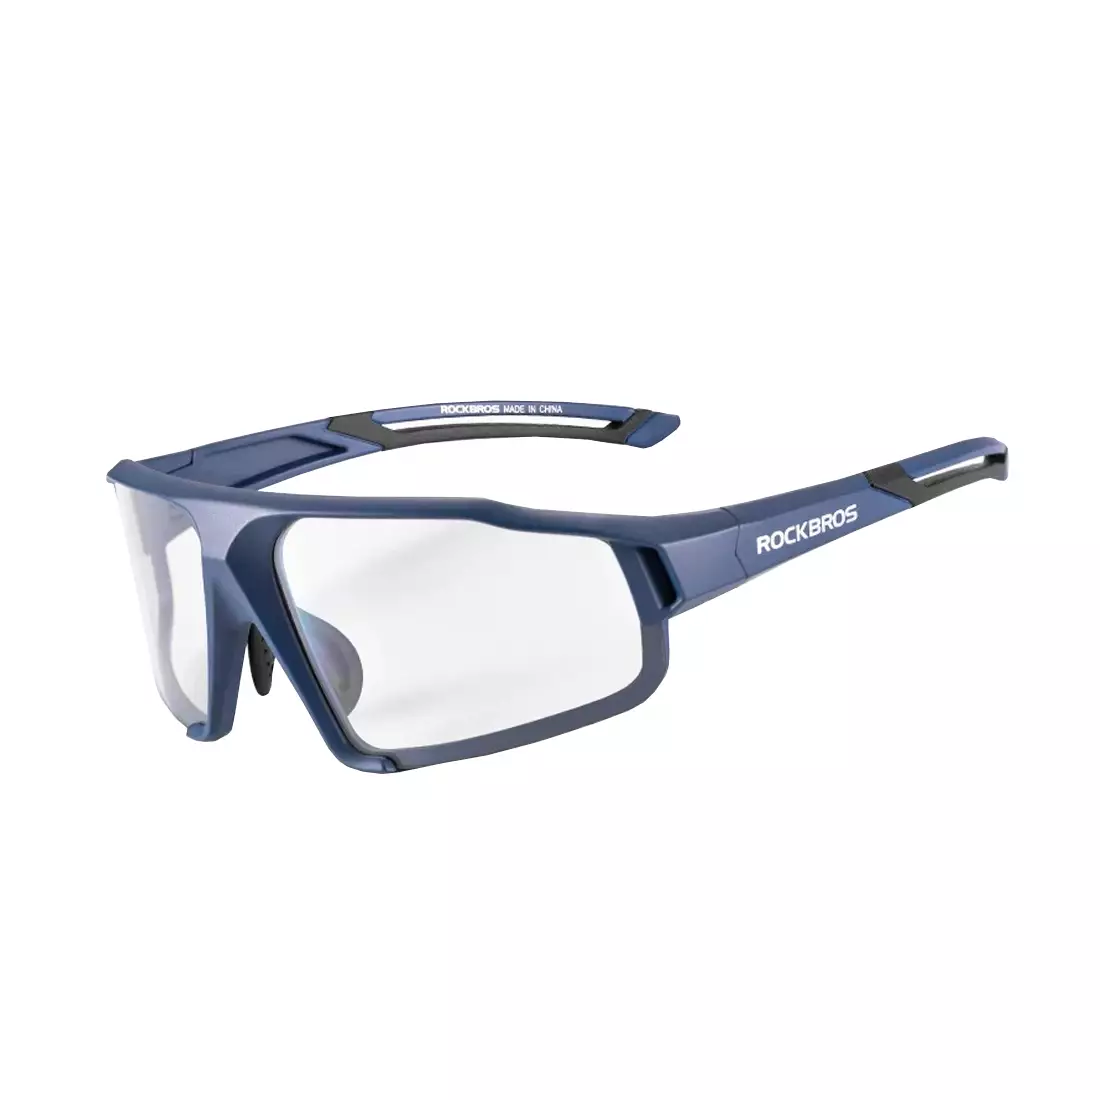 Rockbros SP216BL ochelari fotocromici pentru ciclism / sport albastru marin